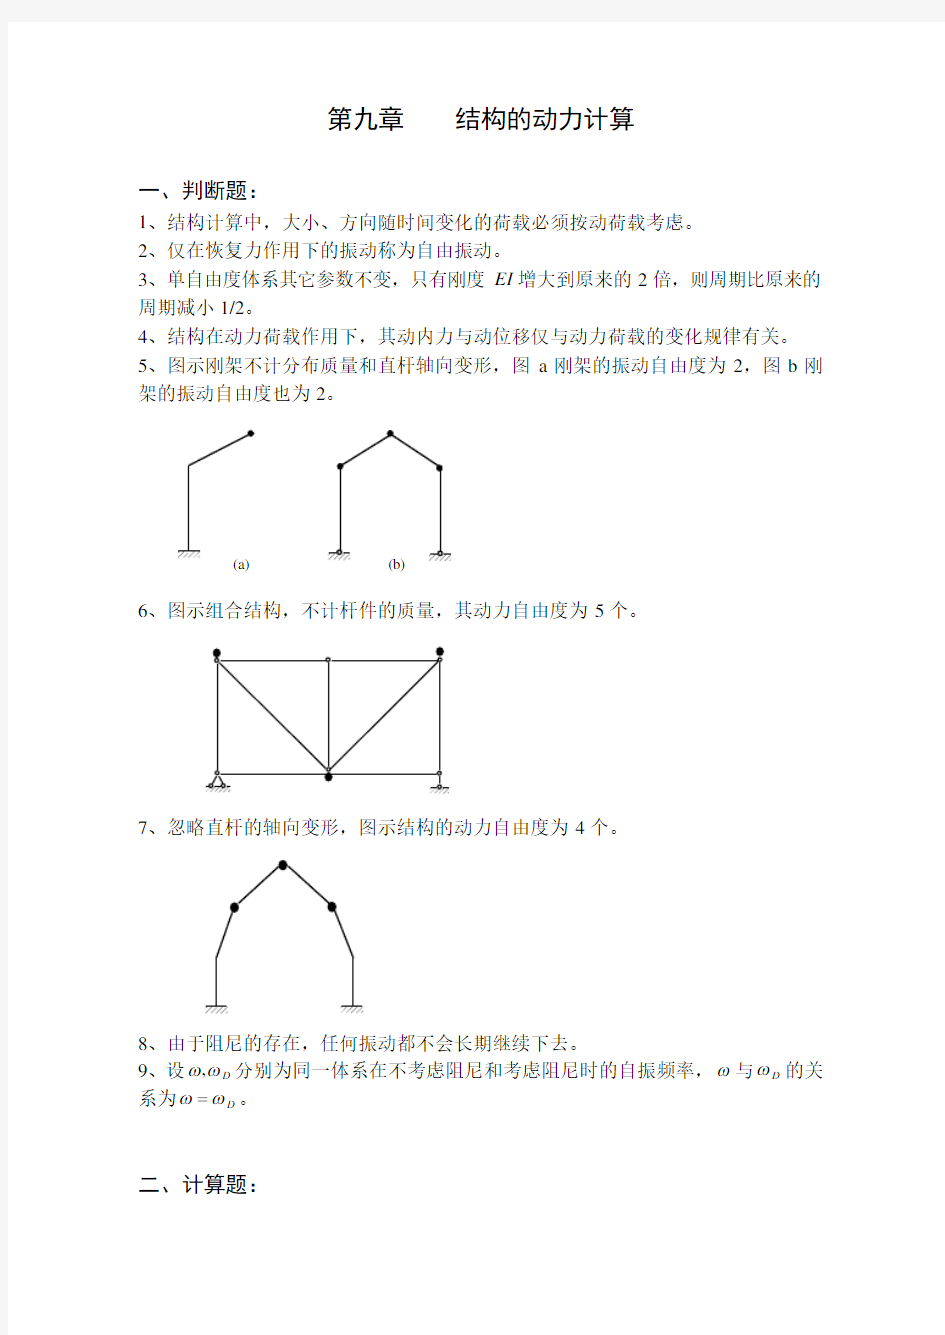 《结构力学习题集及标准答案》(下)-2a